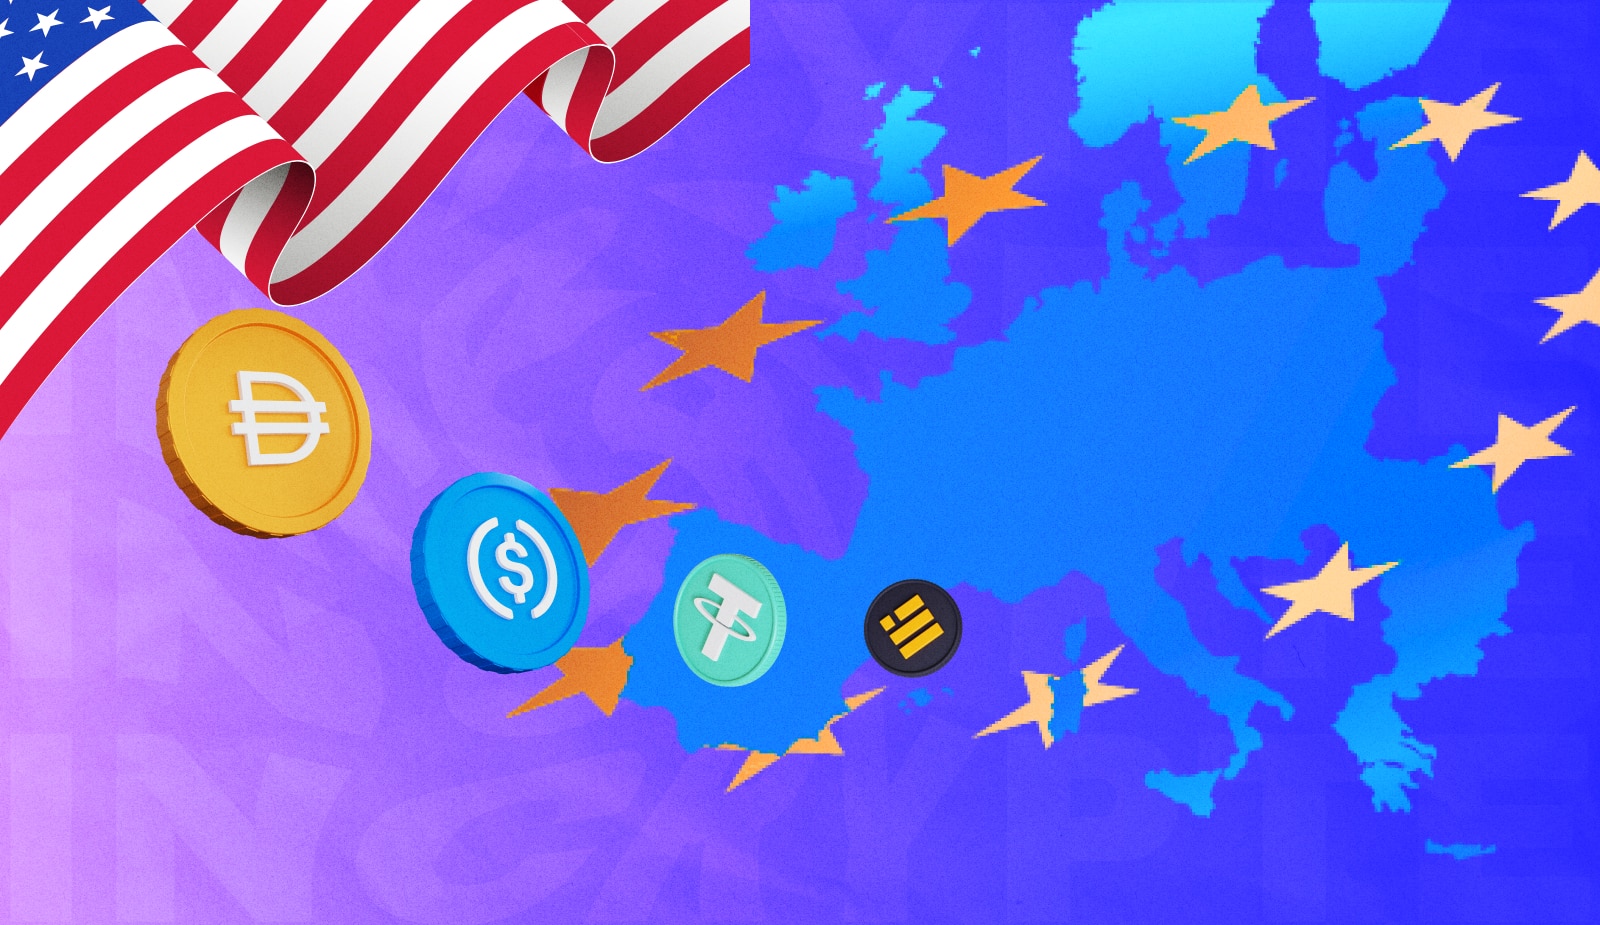 ЕС и США провели совместный форум на тему регулирования криптовалют. Заглавный коллаж новости.